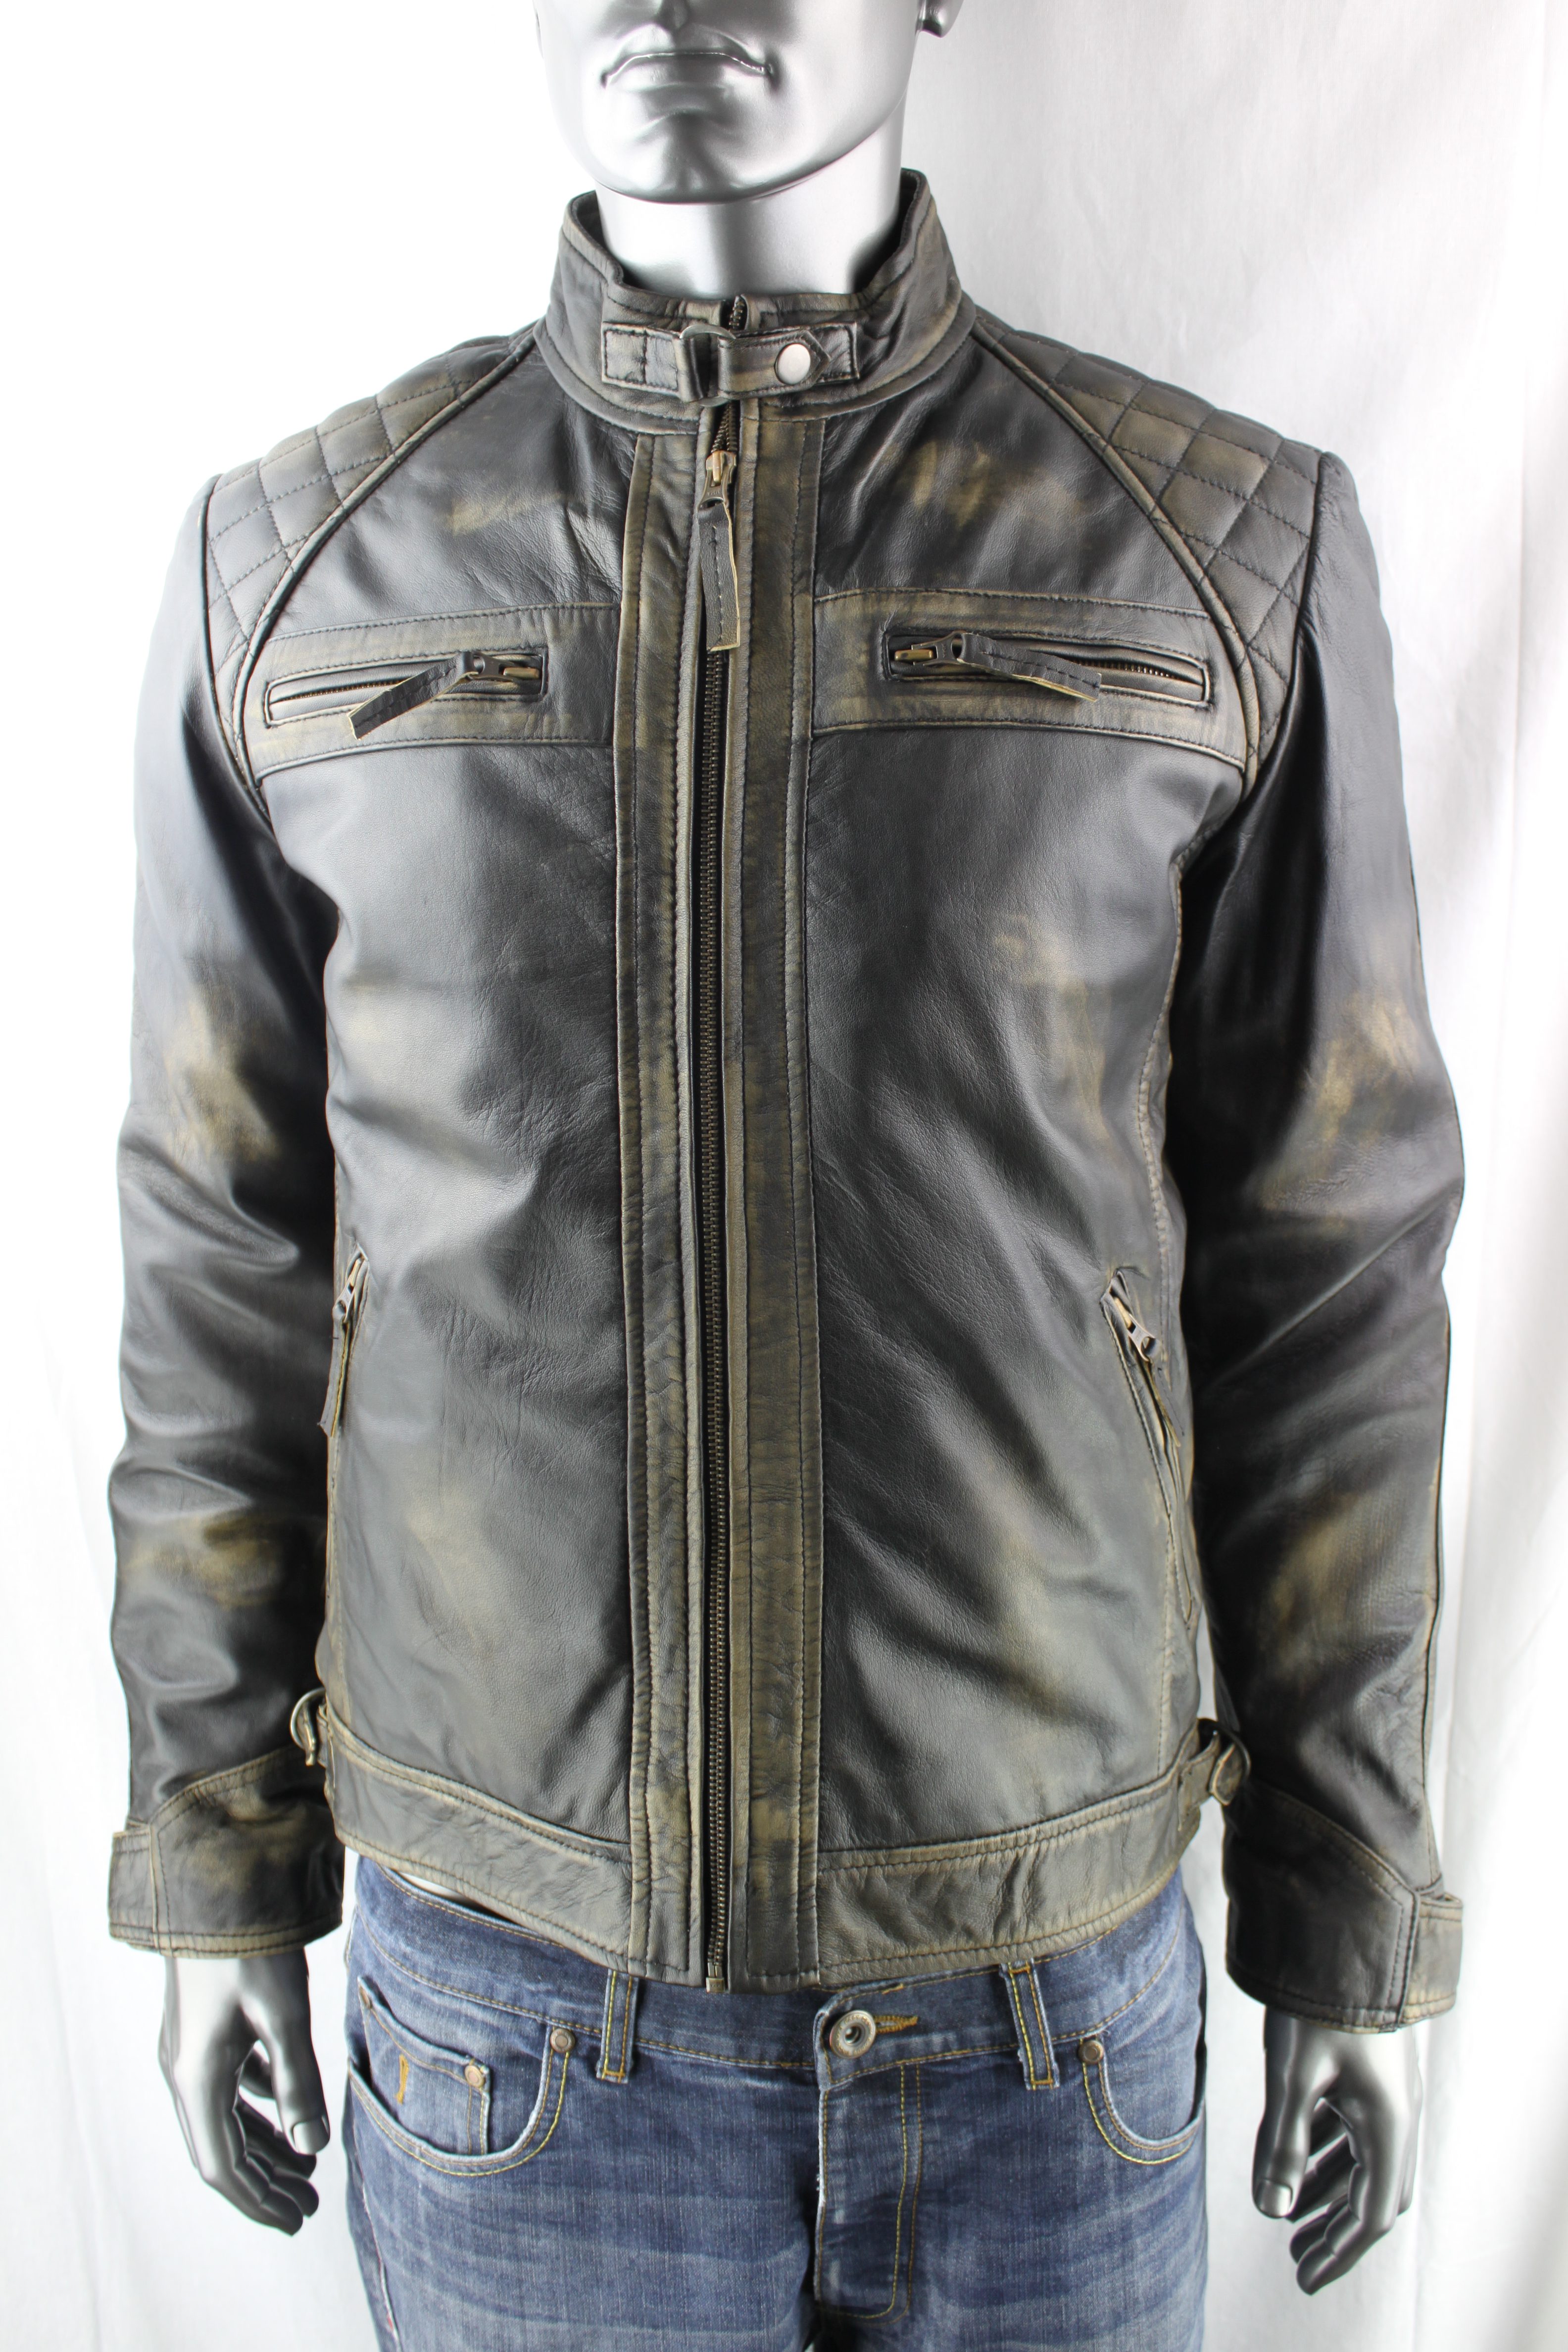 Mens Vintage Look Leather Biker Jacket - Radford Leathers